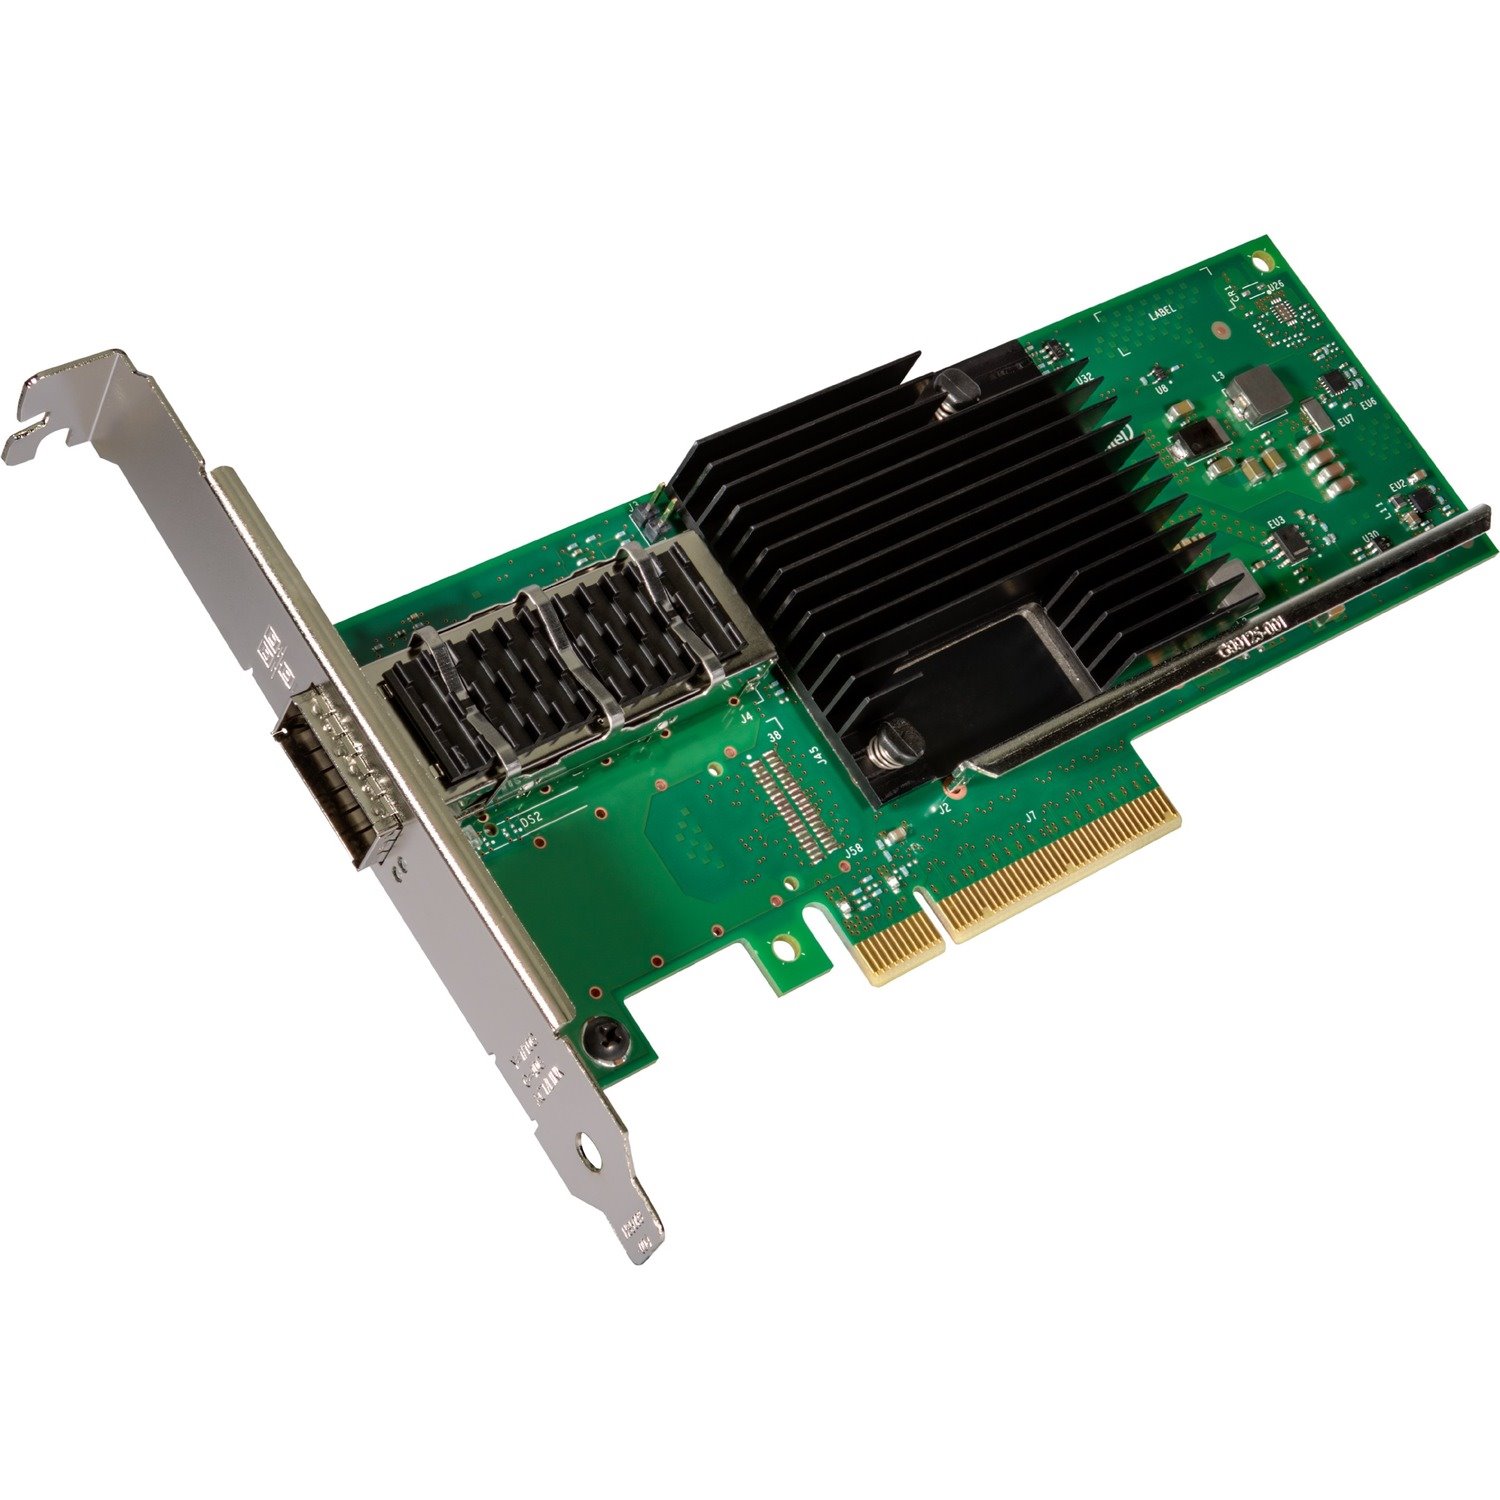 Intel XL710 40Gigabit Ethernet Card for Server - 40GBase-CR4, 40GBase-SR4, 40GBAse-LR4 - Plug-in Card